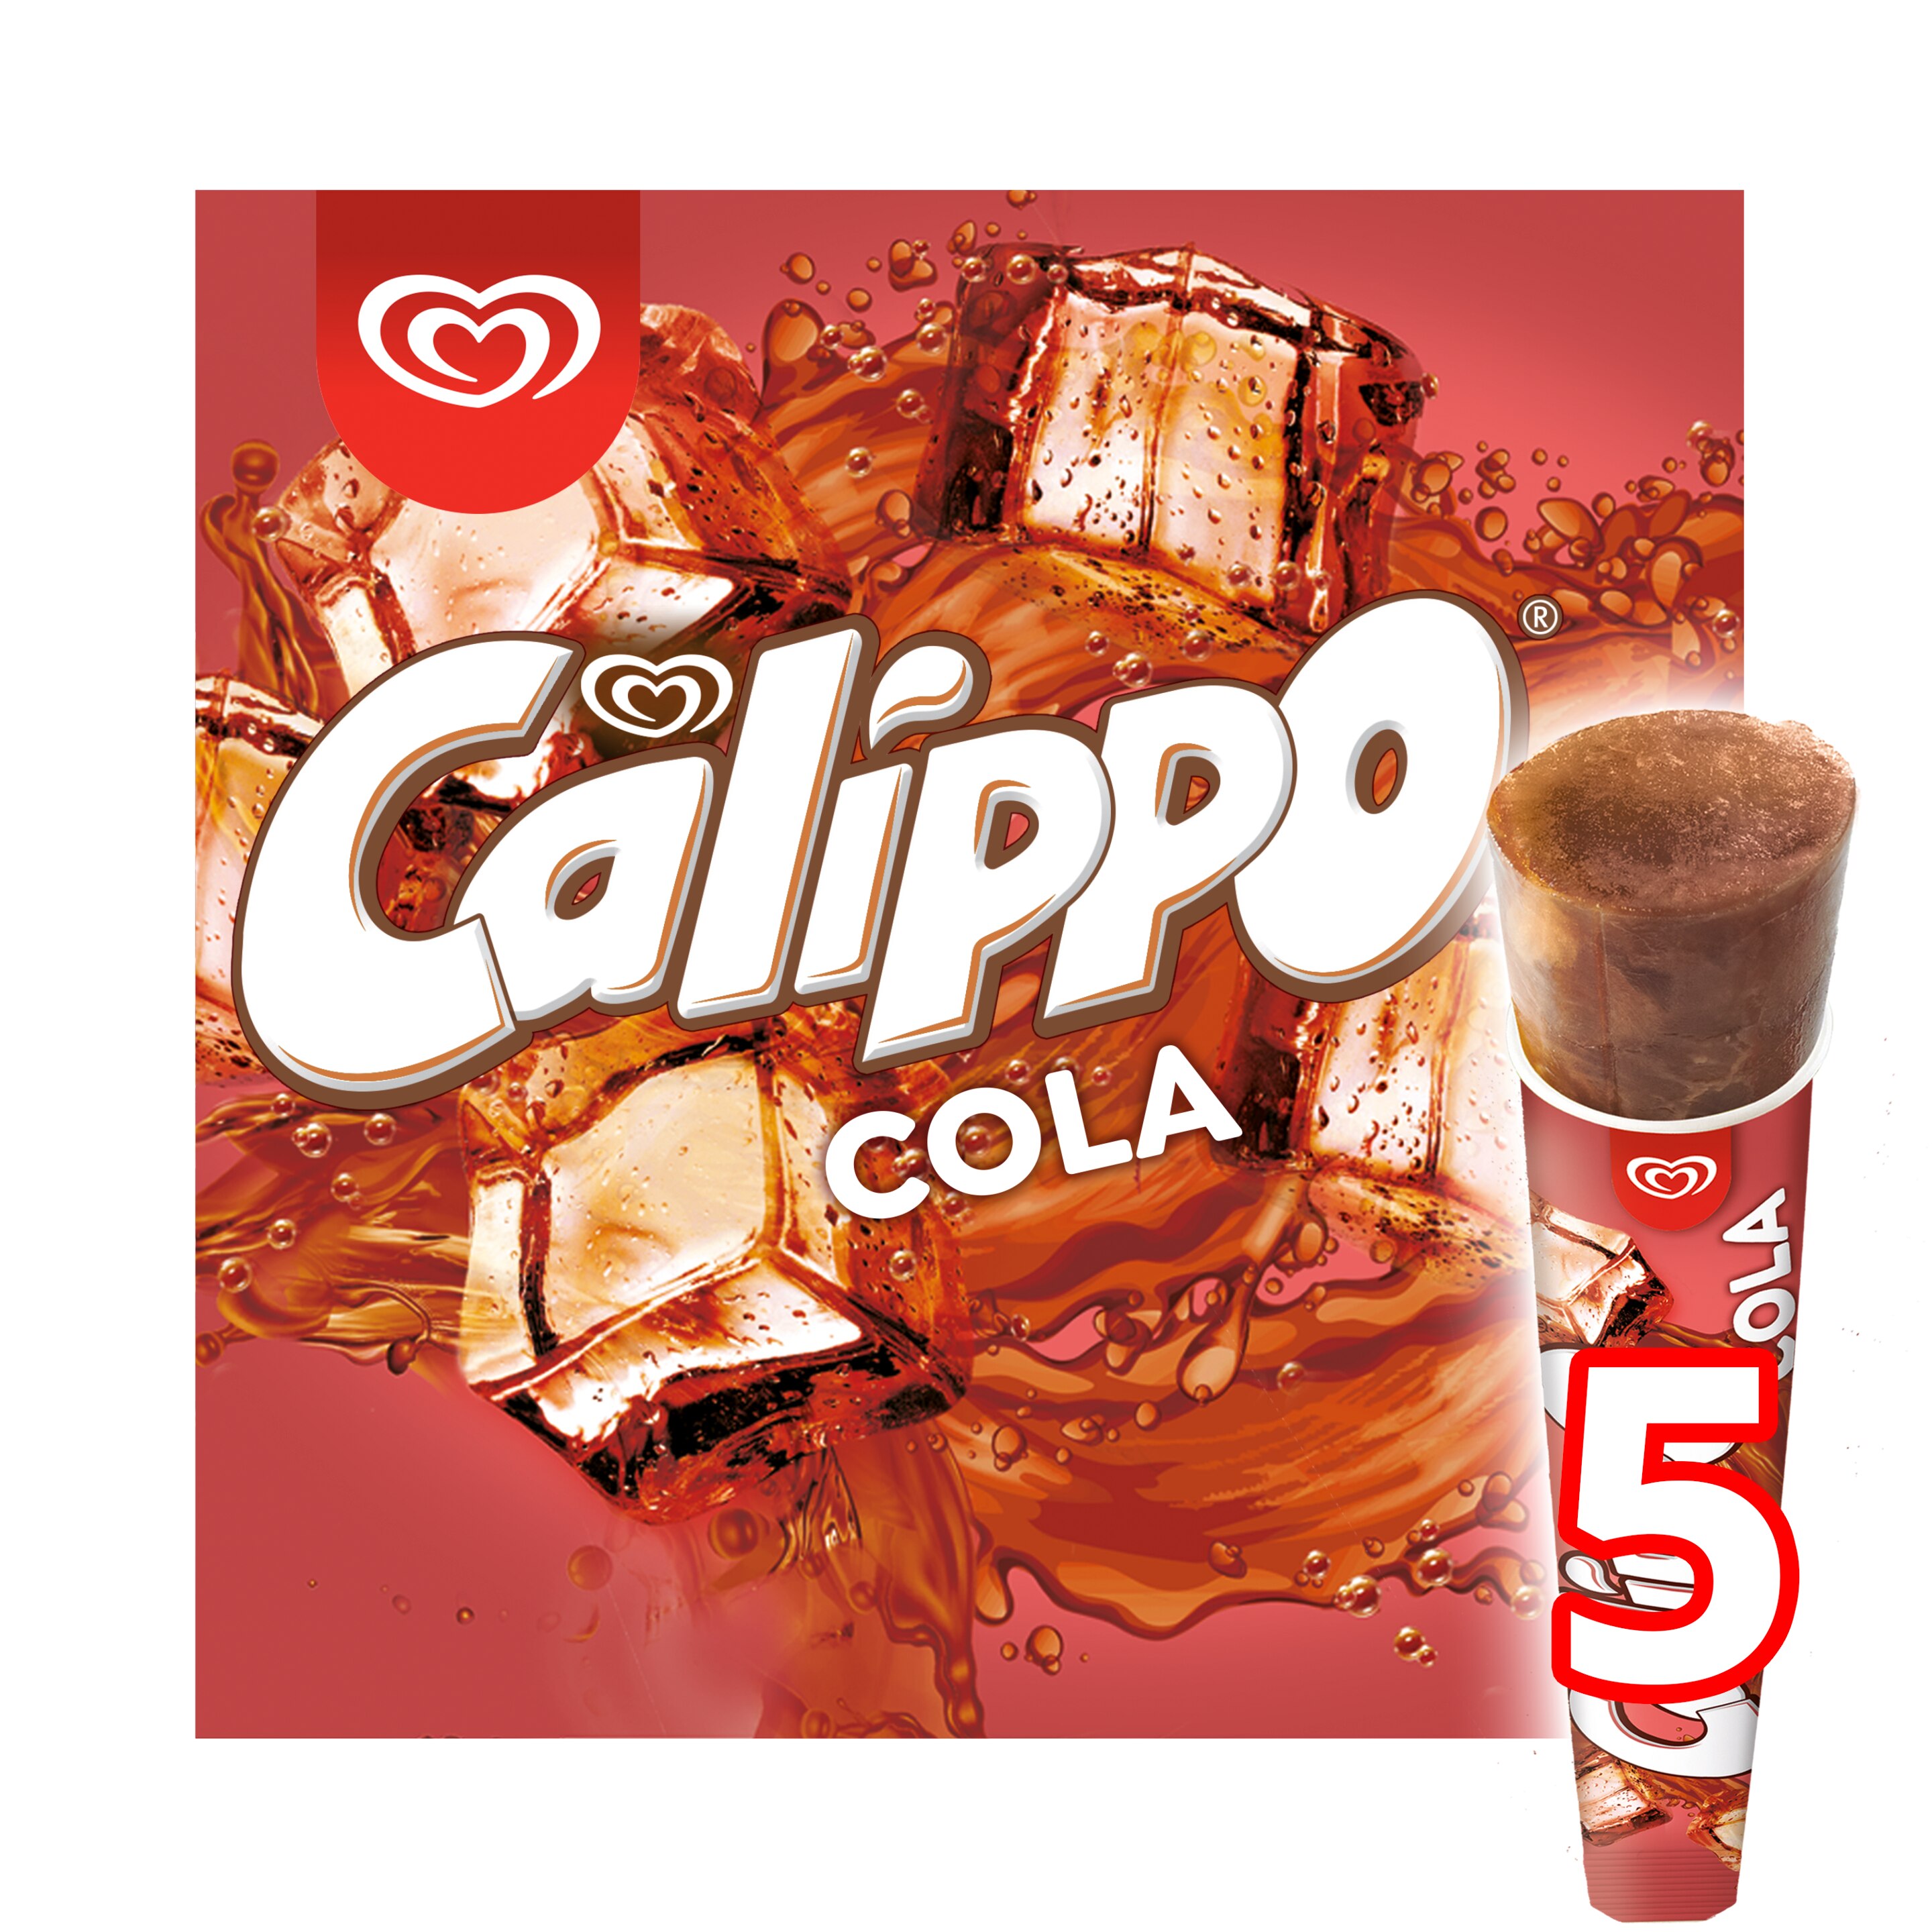 Calippo Cola x 5